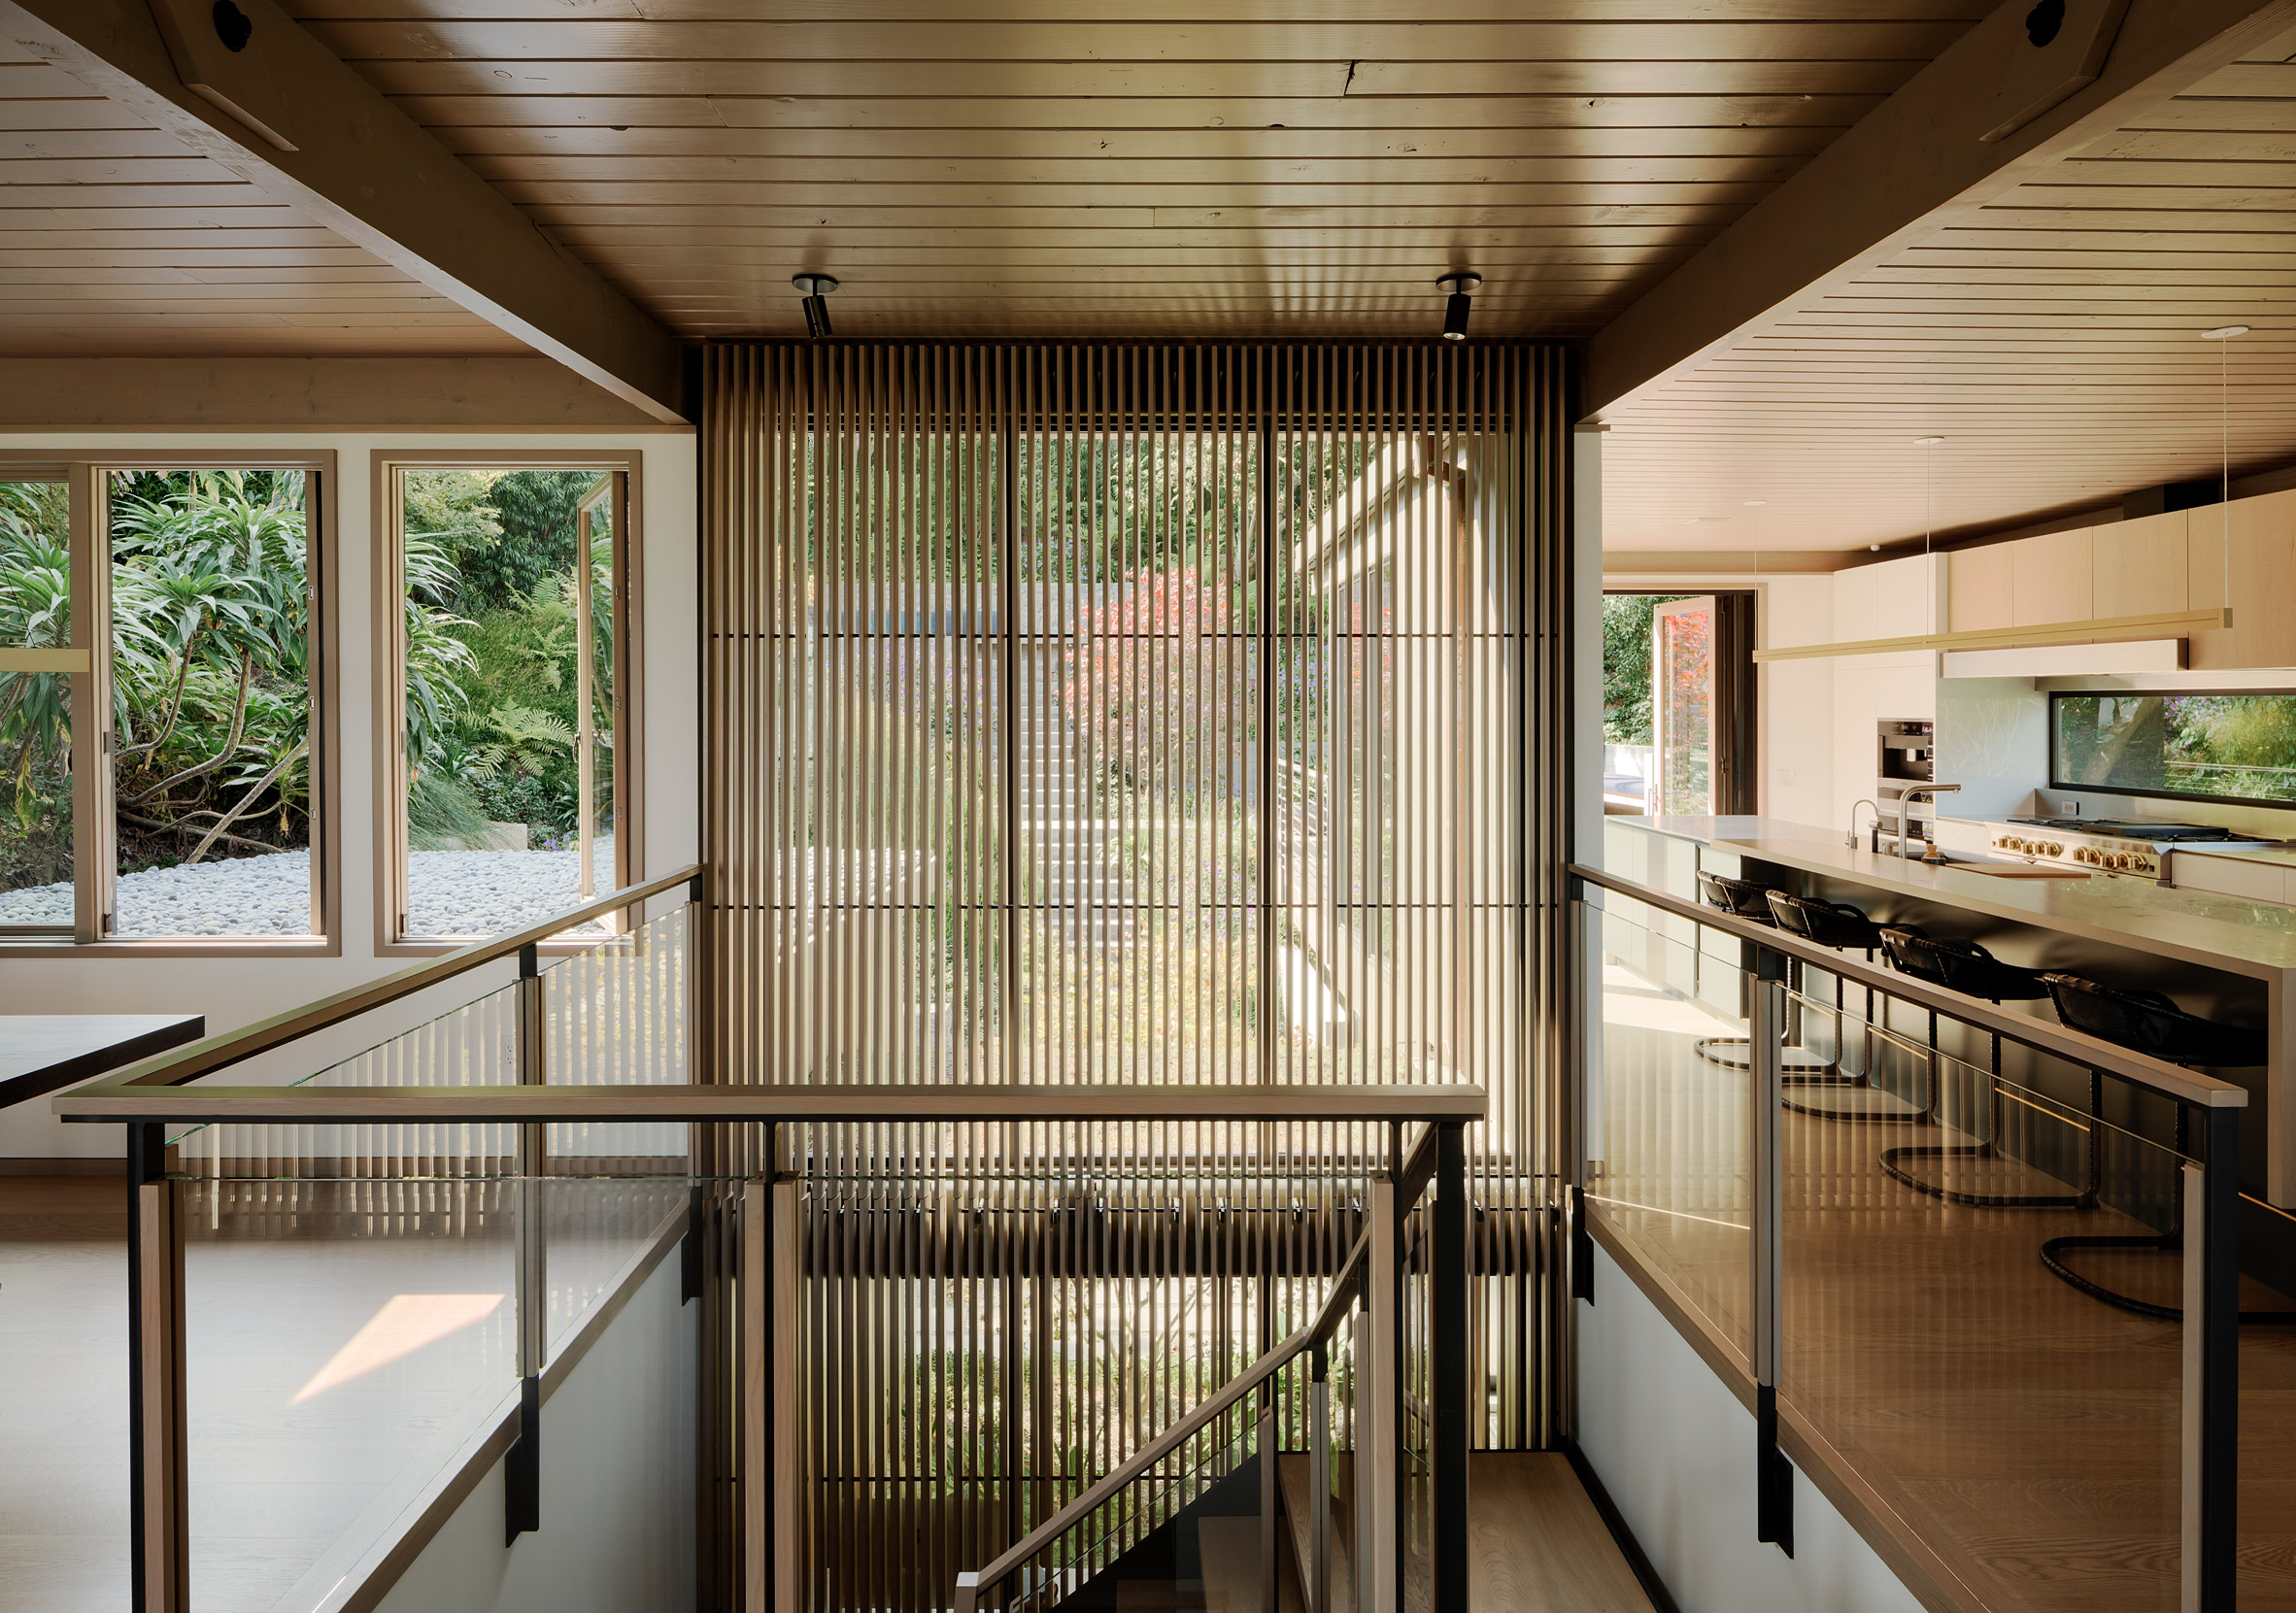 Twin Peaks Residence by Feldman Architects